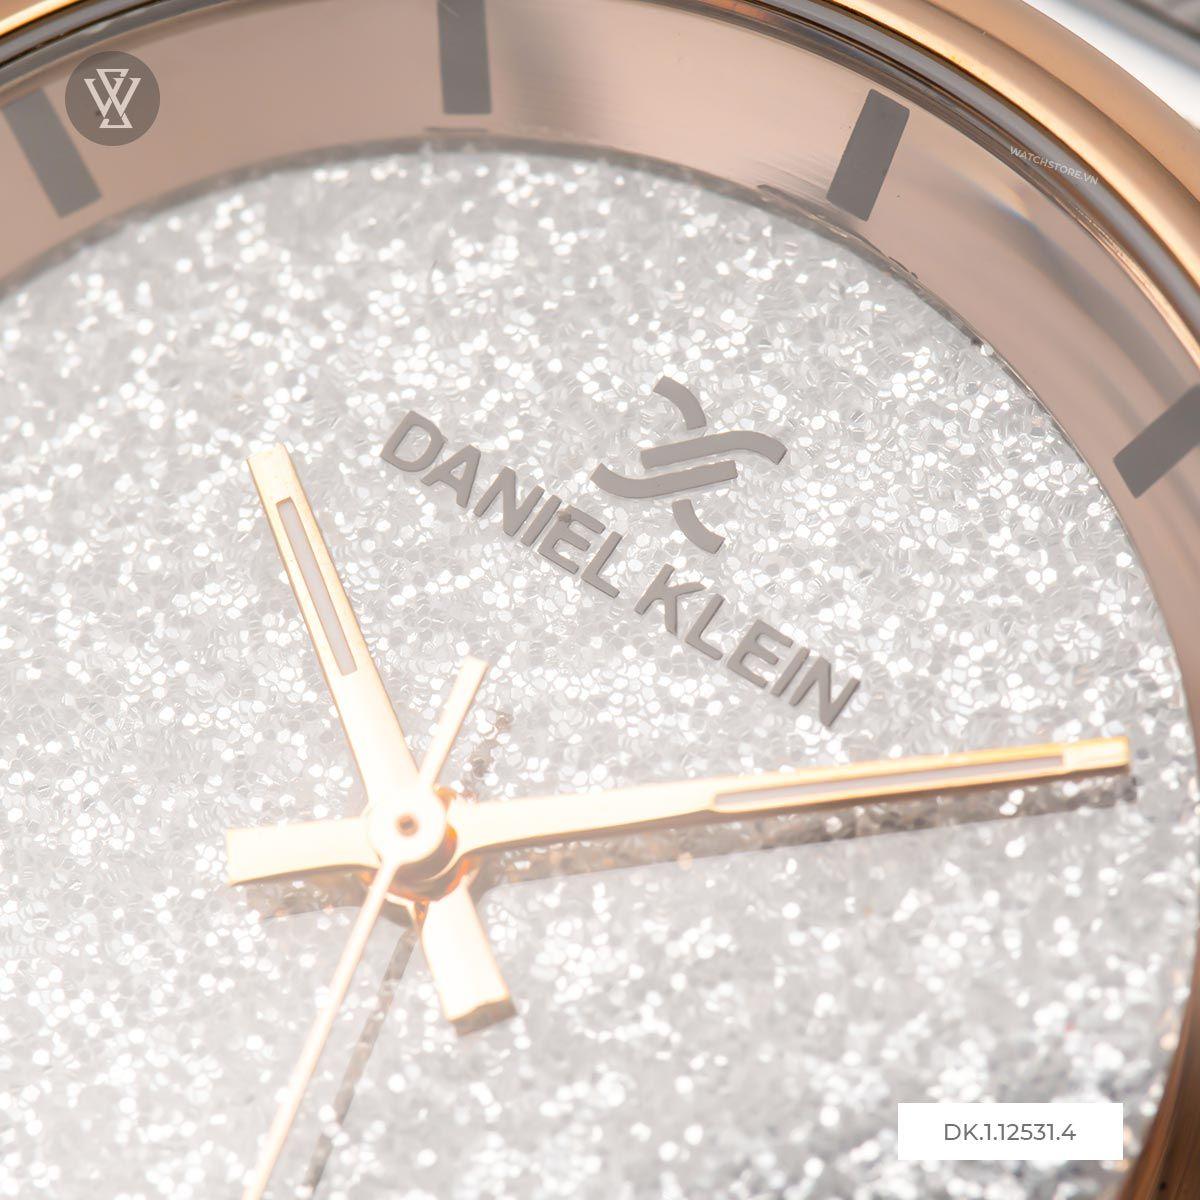 Đồng hồ nữ dây kim loại Daniel Klein DK.1.12531.4